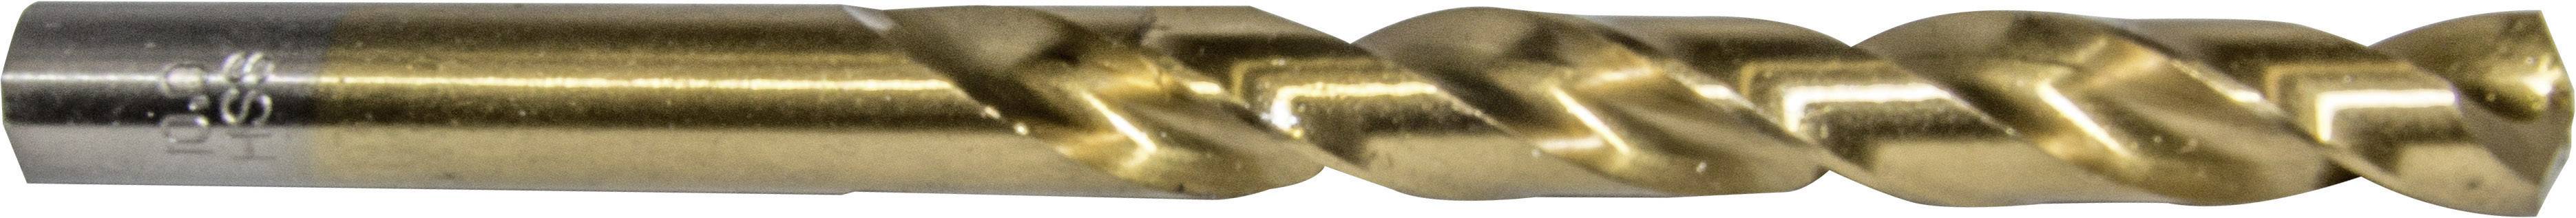 HELLER 29273 3 Metall-Spiralbohrer 1 Stück 9.5 mm Gesamtlänge 125 mm 1 St.